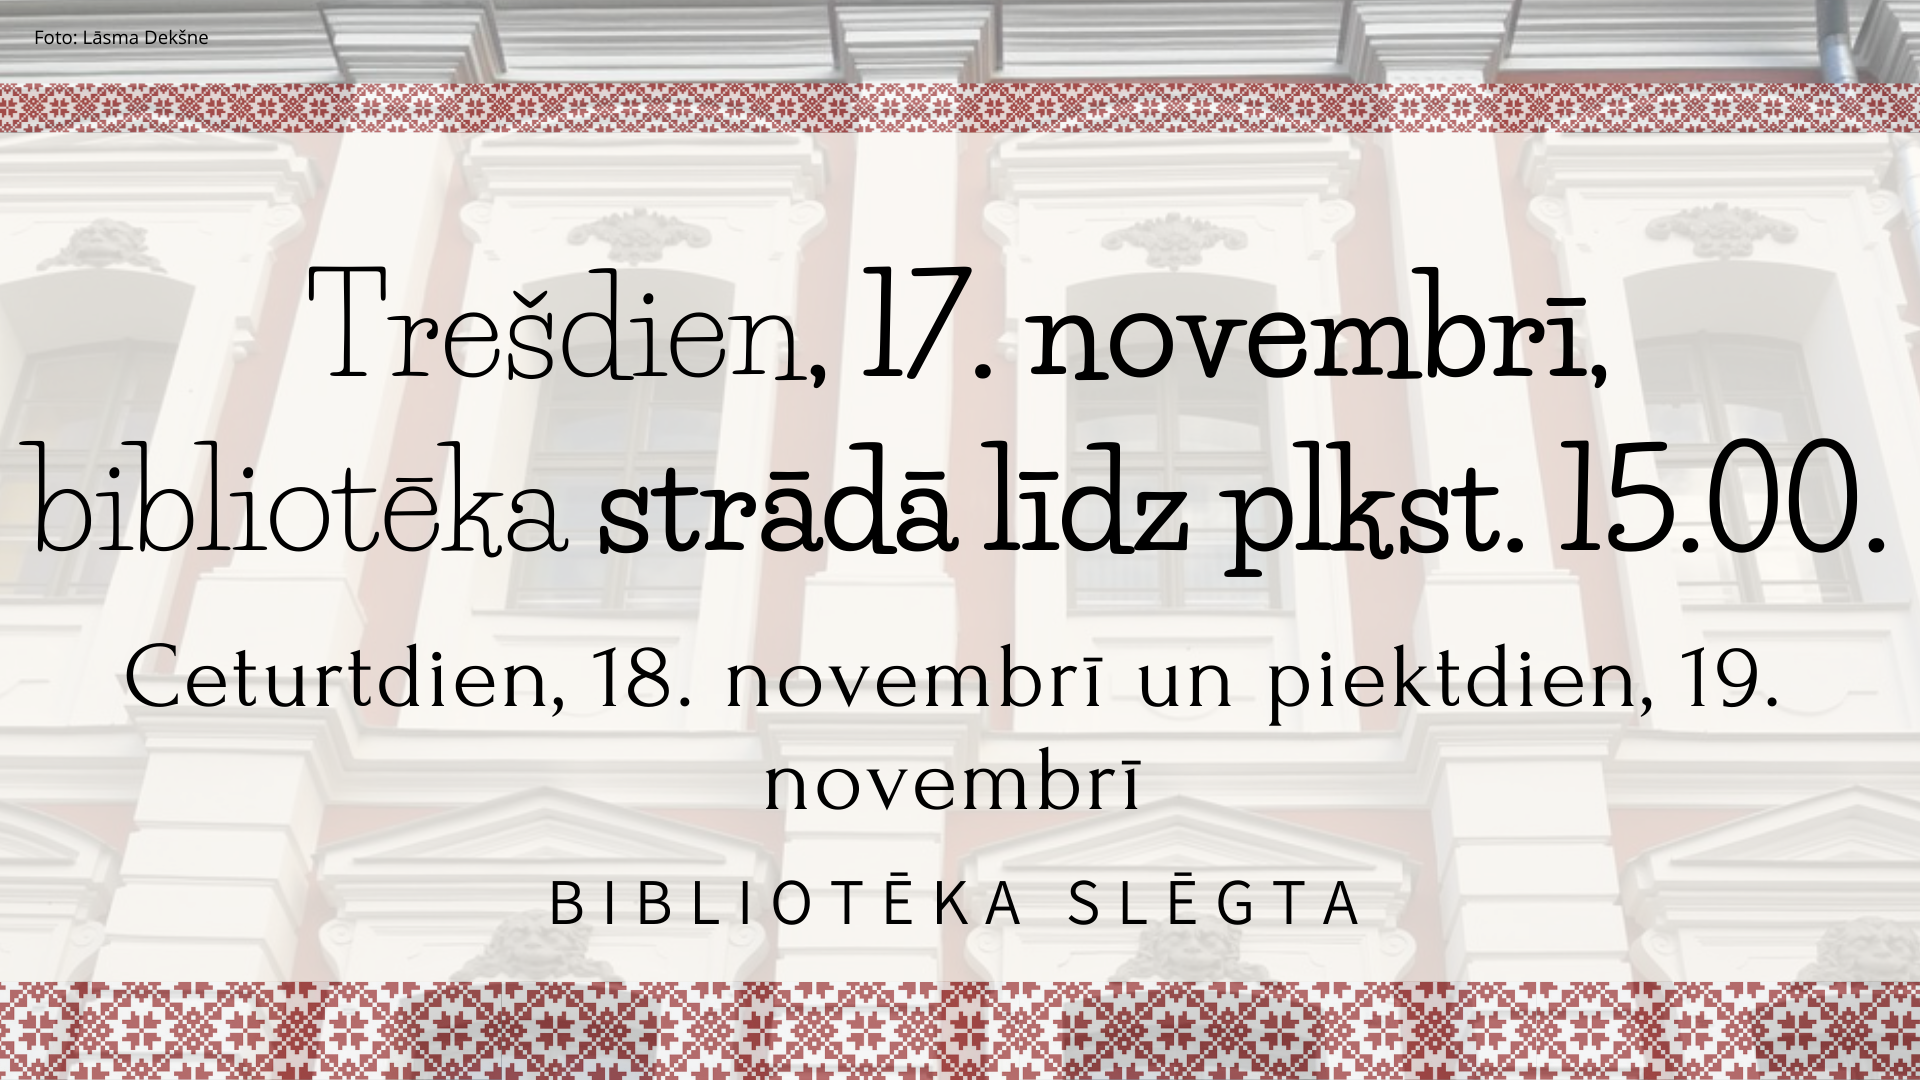 17. novembrī bibliotēka strādā līdz plkst. 15.00. 18.11.2021. un 19.11.2021. bibliotēka slēgta.